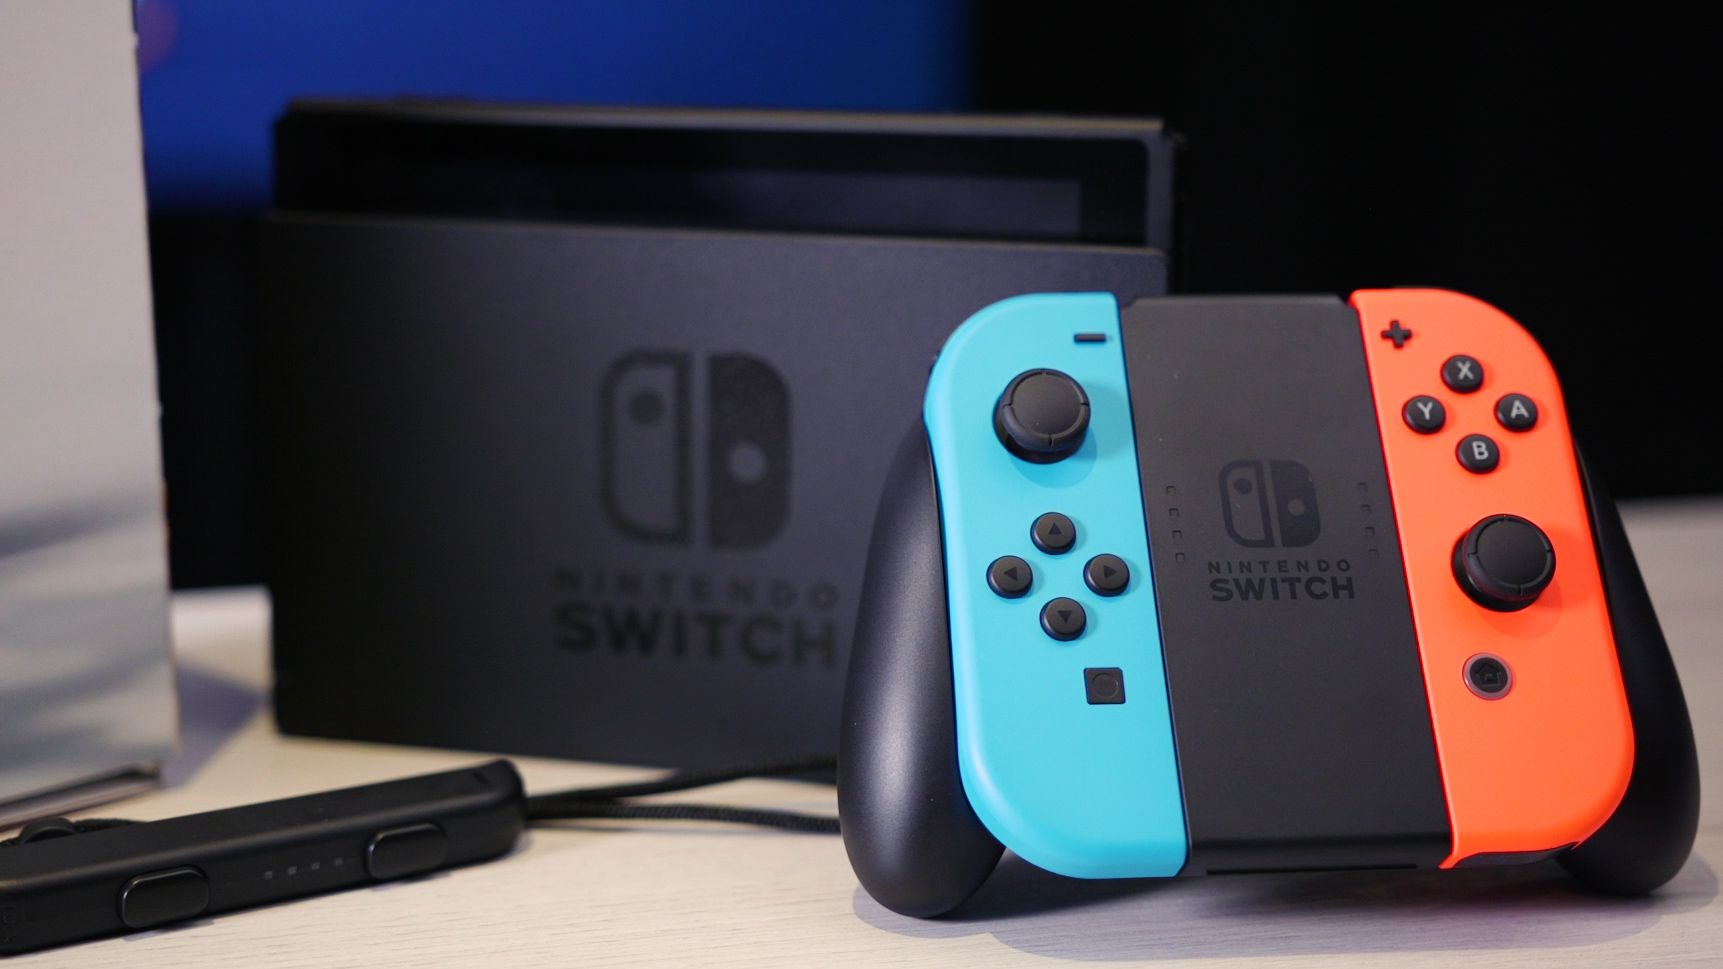 Nintendo Switch - Lista de Jogos e Datas de Lançamento em 2017 e 2018